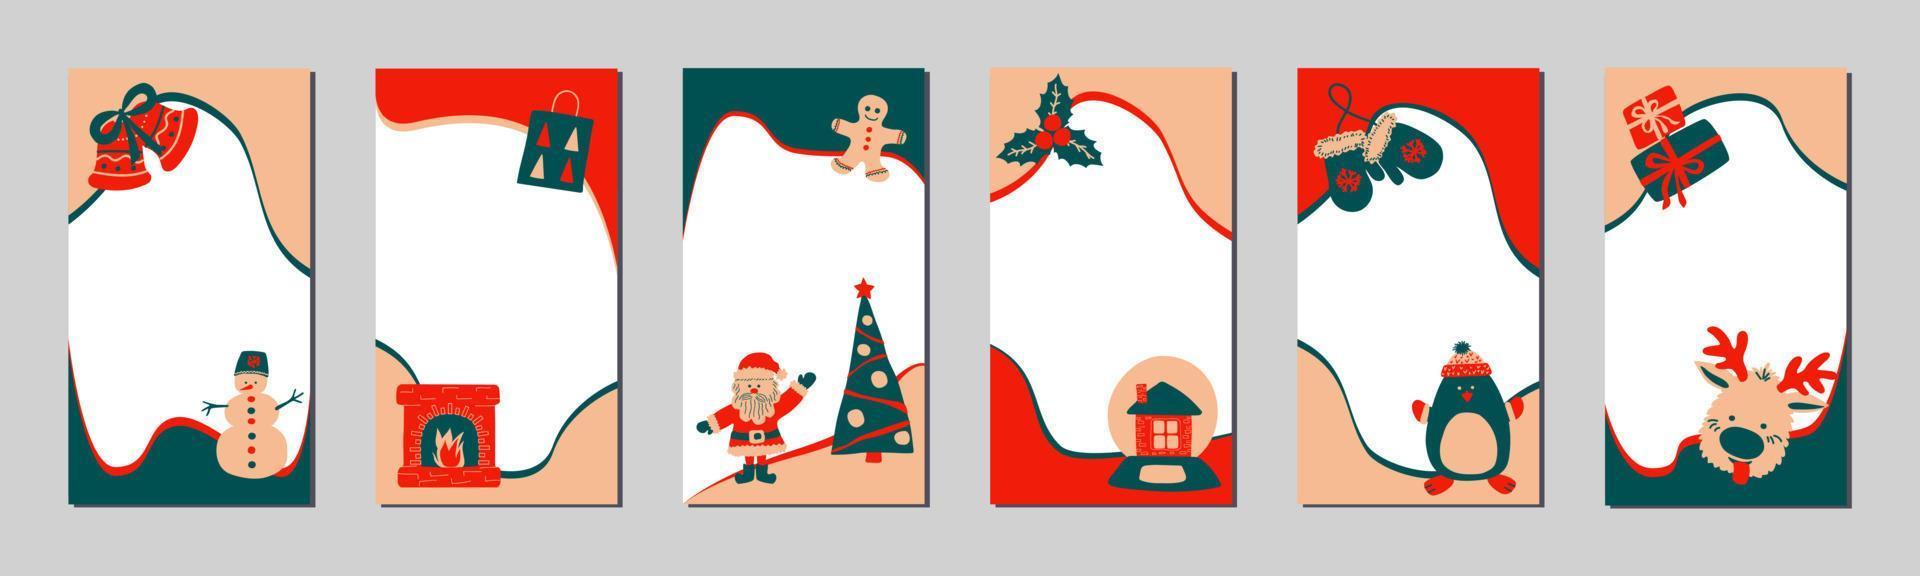 plantilla de historias navideñas para redes sociales al estilo de dibujo a mano simple escandinavo. marcos de vacaciones para fotos con personajes lindos: santa, reno, hombre de pan de jengibre, muñeco de nieve, pingüino. vector